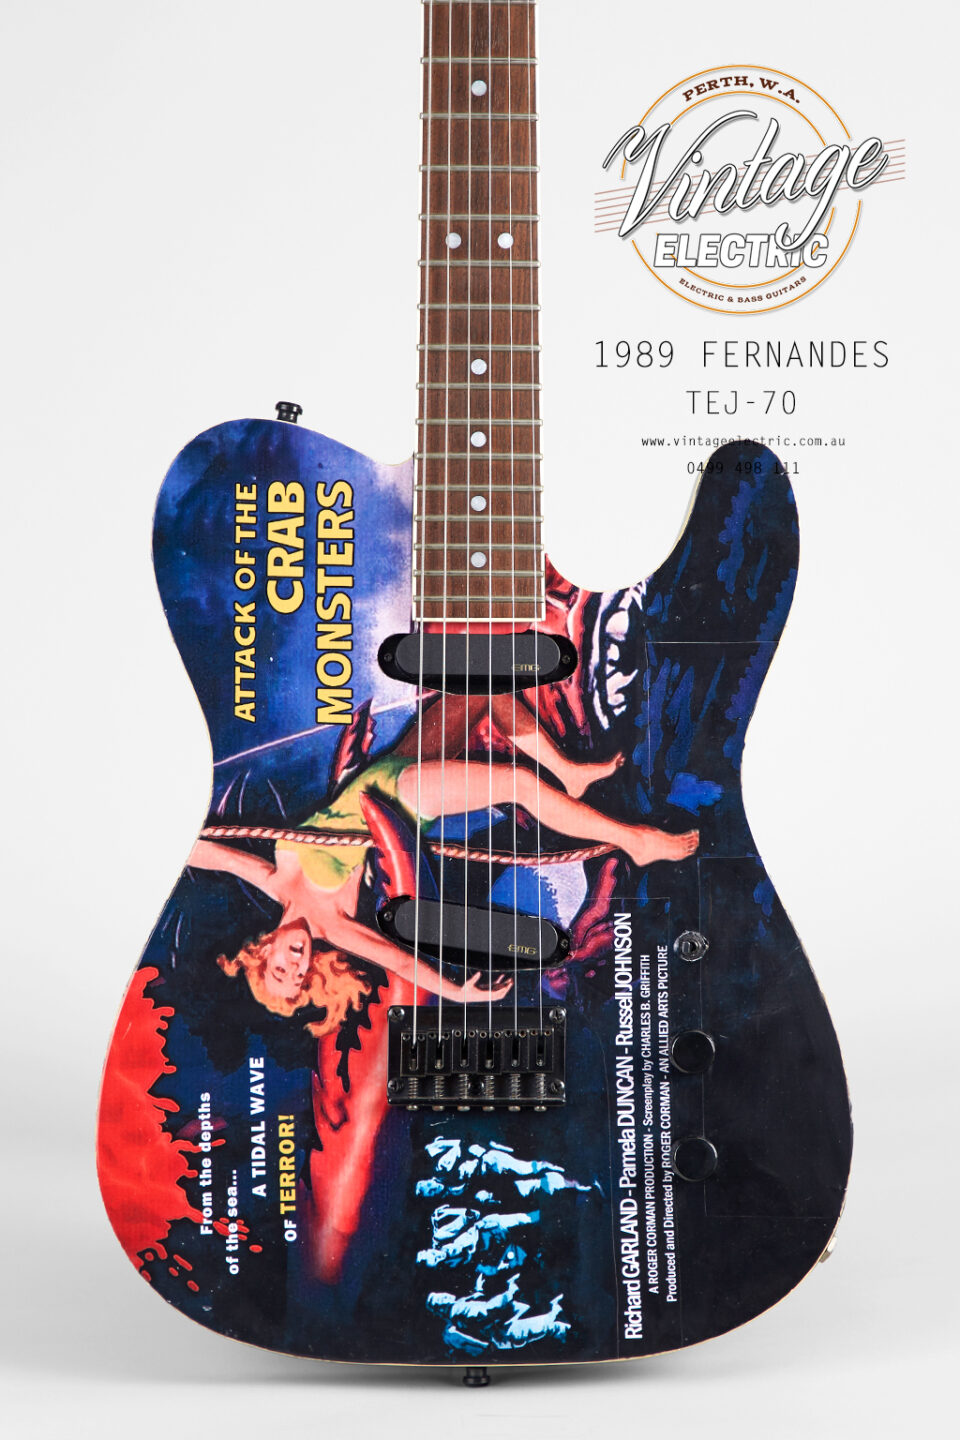 1989 Fernandes TEJ-70 Guitar | Vintage Electric